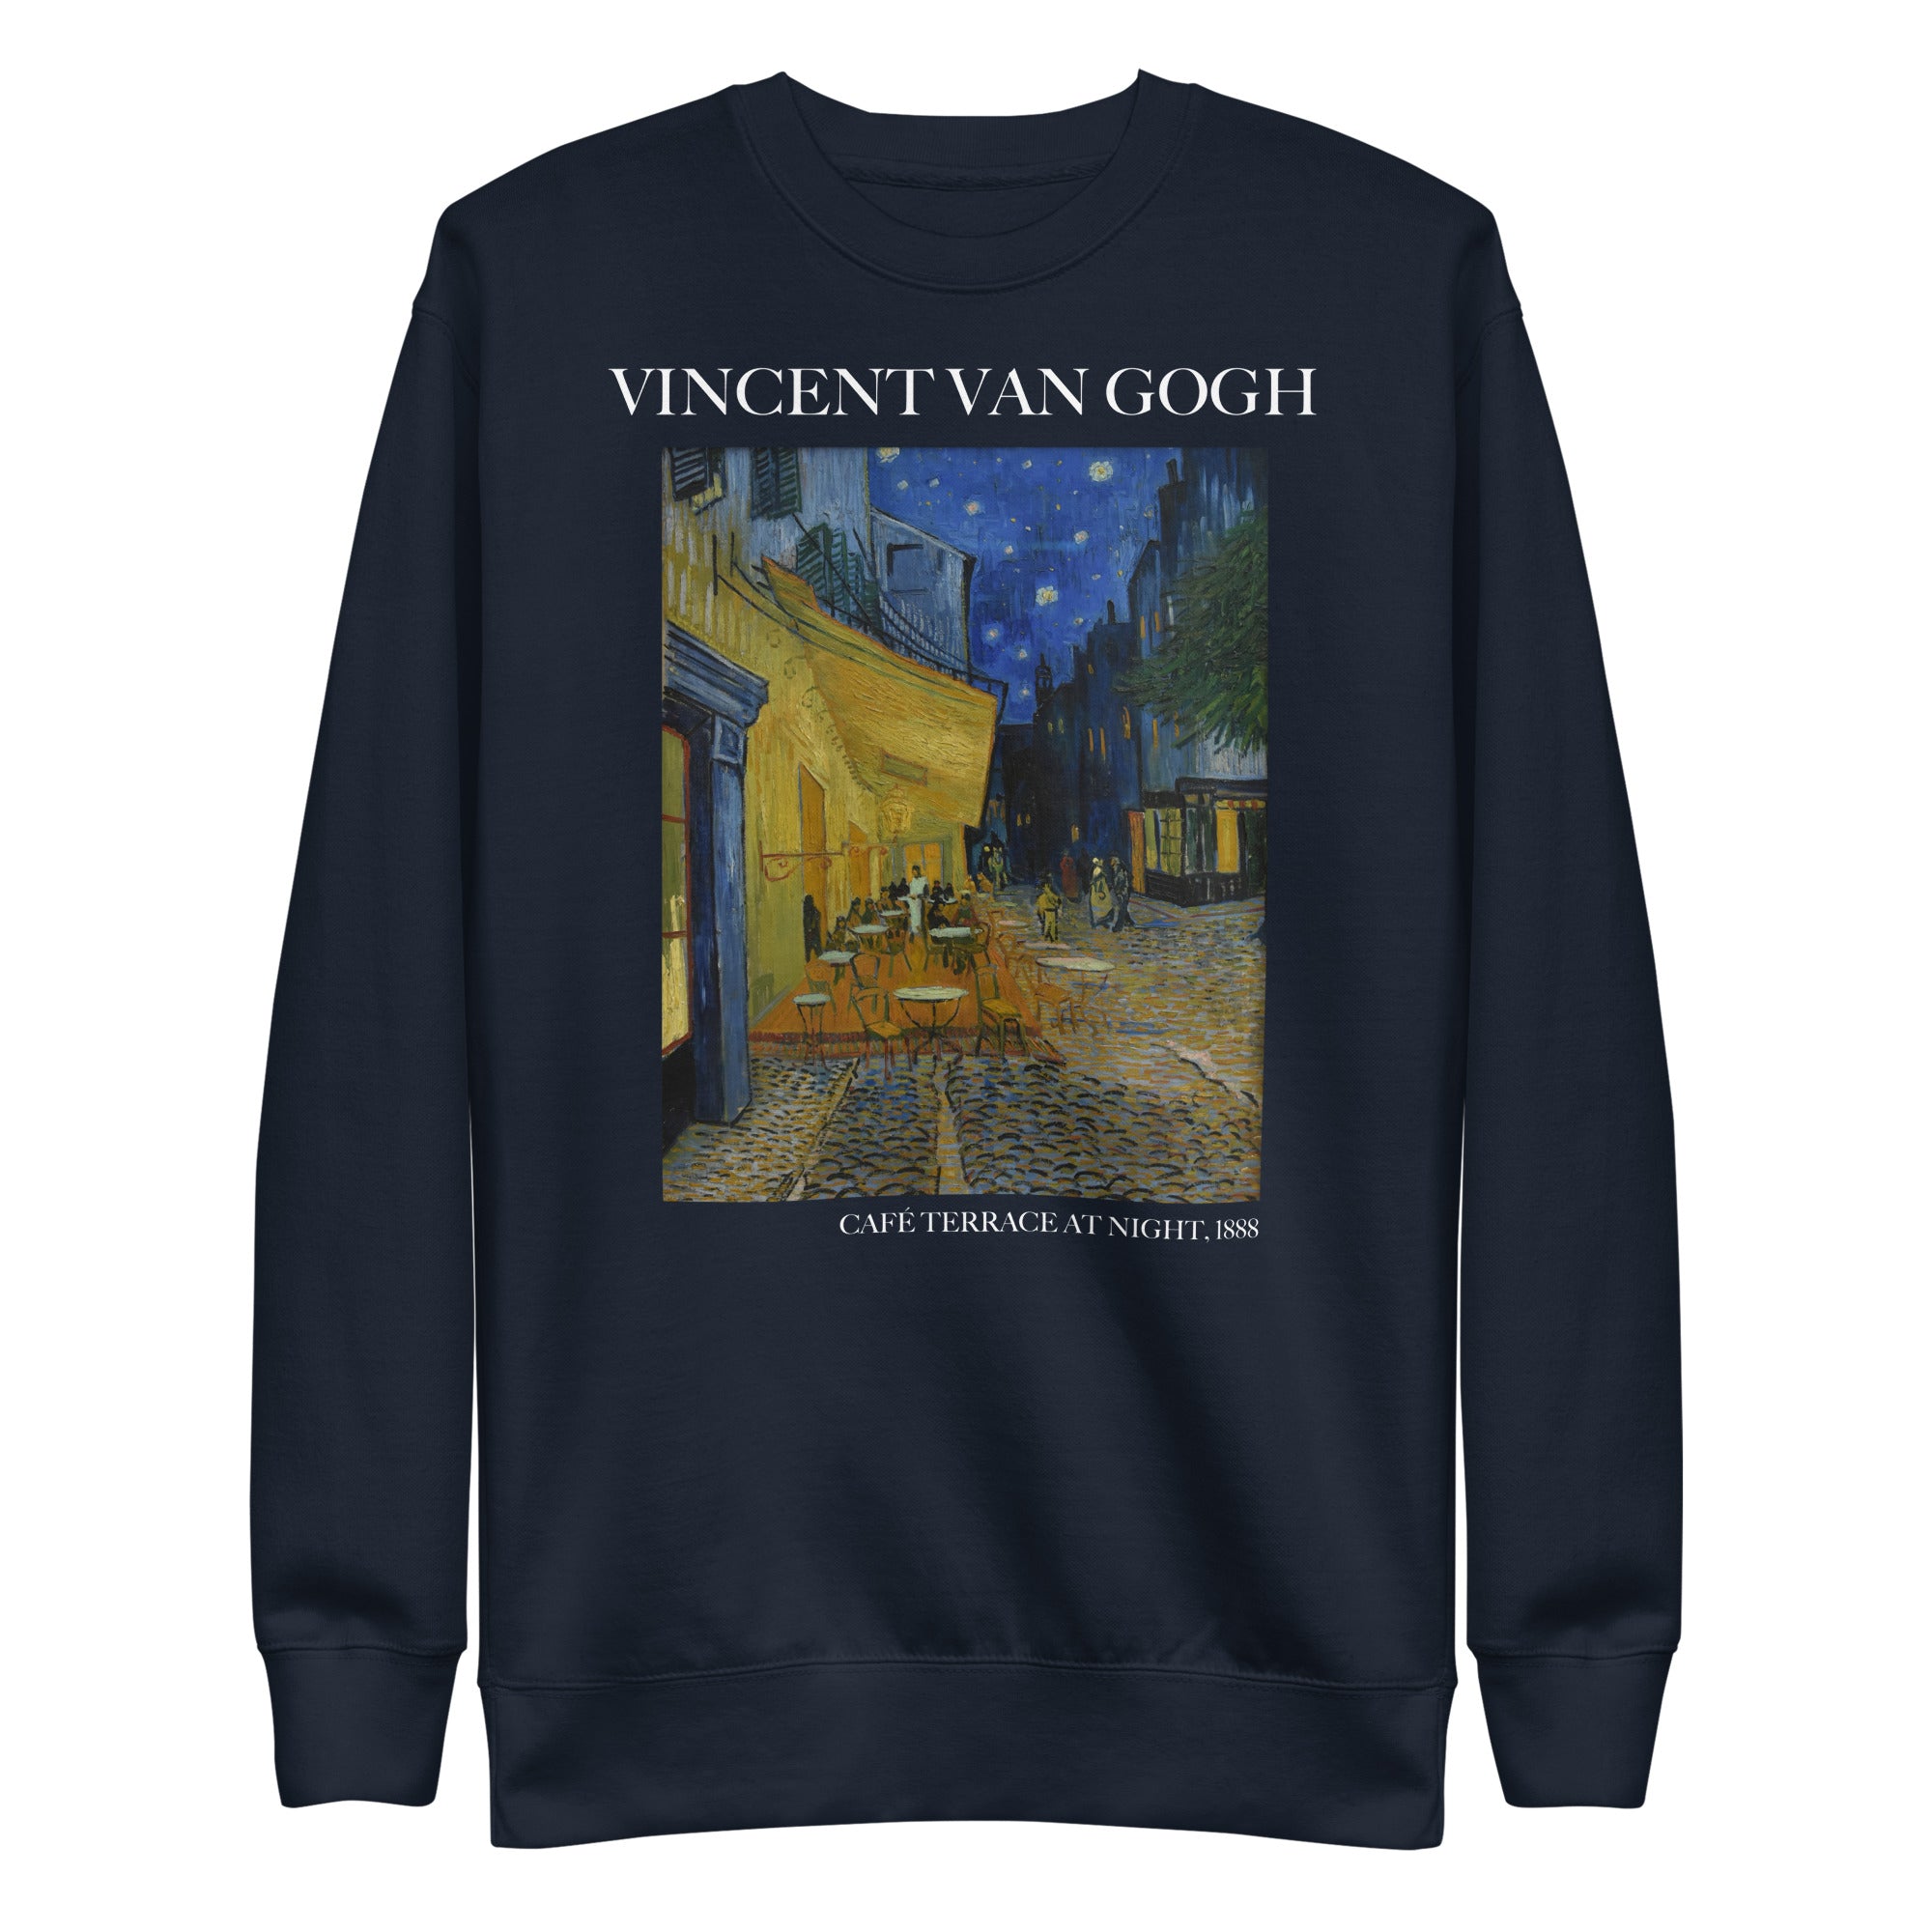 Vincent van Gogh 'Café Terrace at Night' Famous Painting Sweatshirt | Unisex Premium Sweatshirt